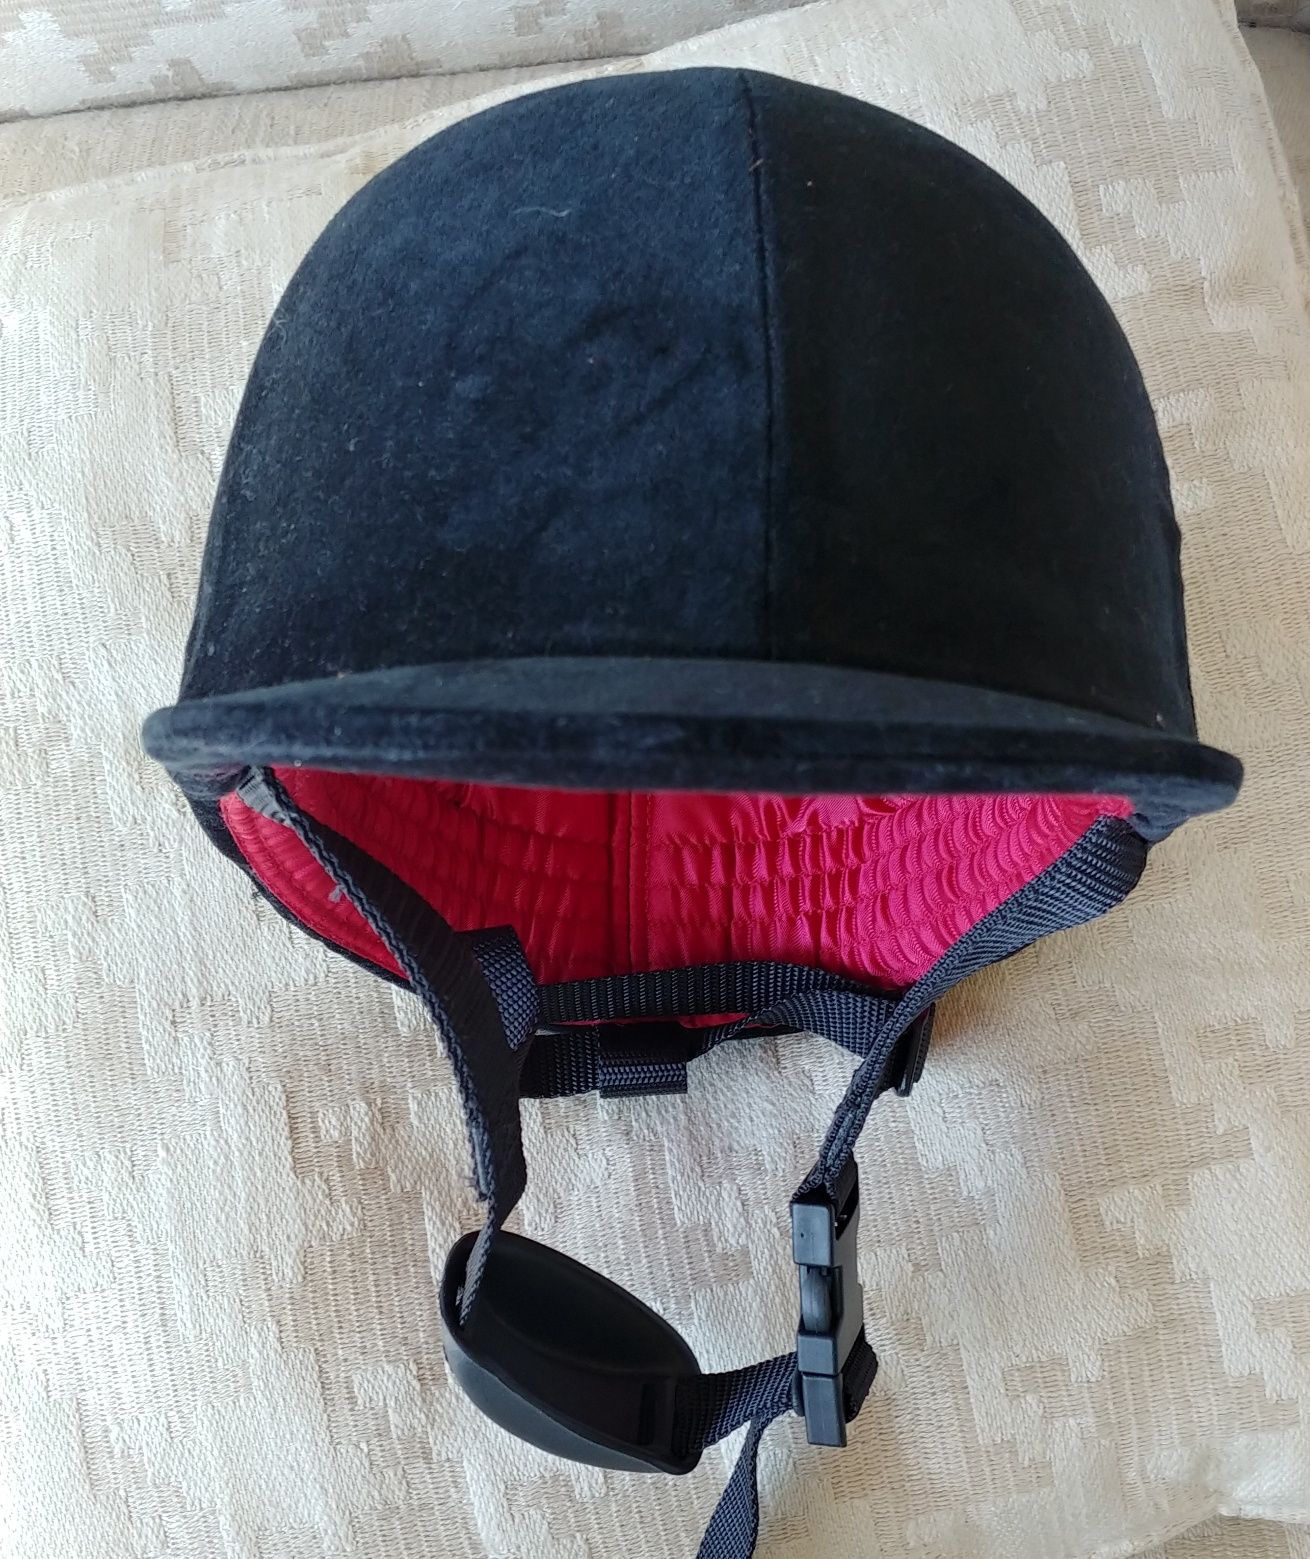 Toque capacete equitação criança 6 anos